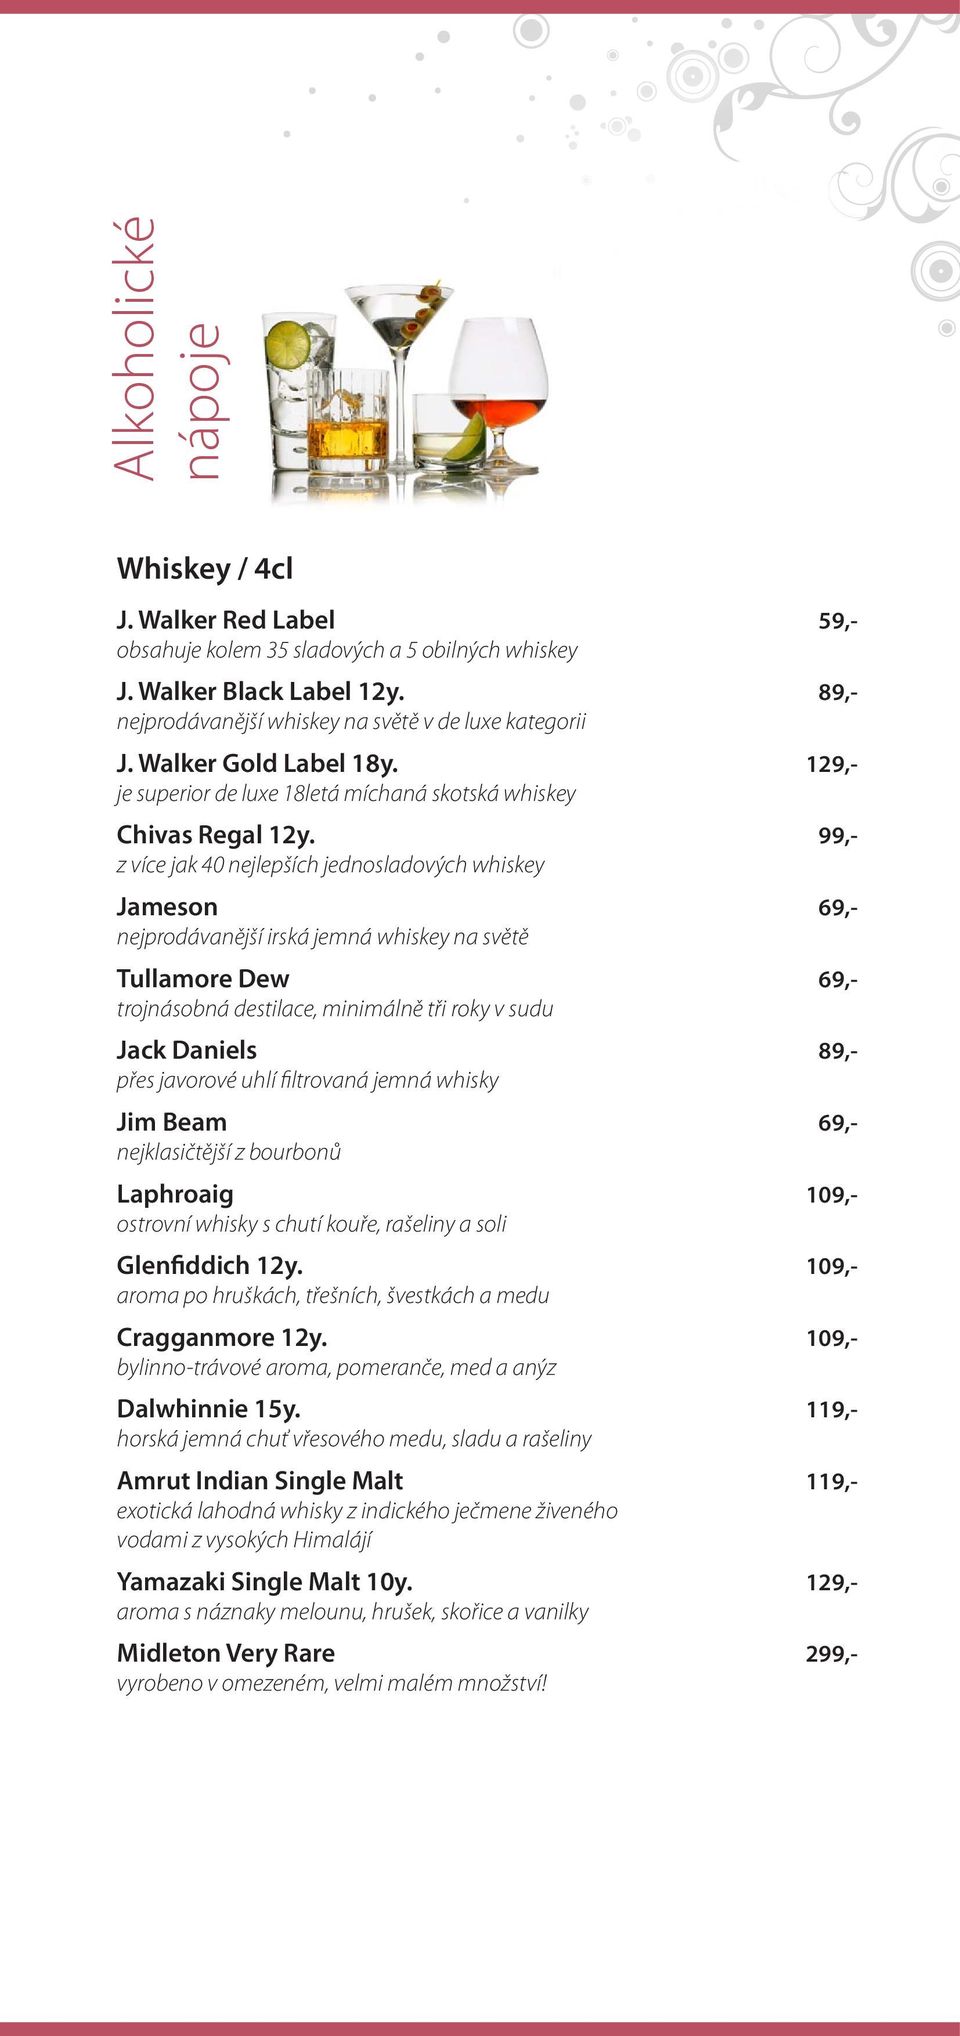 z více jak 40 nejlepších jednosladových whiskey Jameson nejprodávanější irská jemná whiskey na světě Tullamore Dew trojnásobná destilace, minimálně tři roky v sudu Jack Daniels přes javorové uhlí